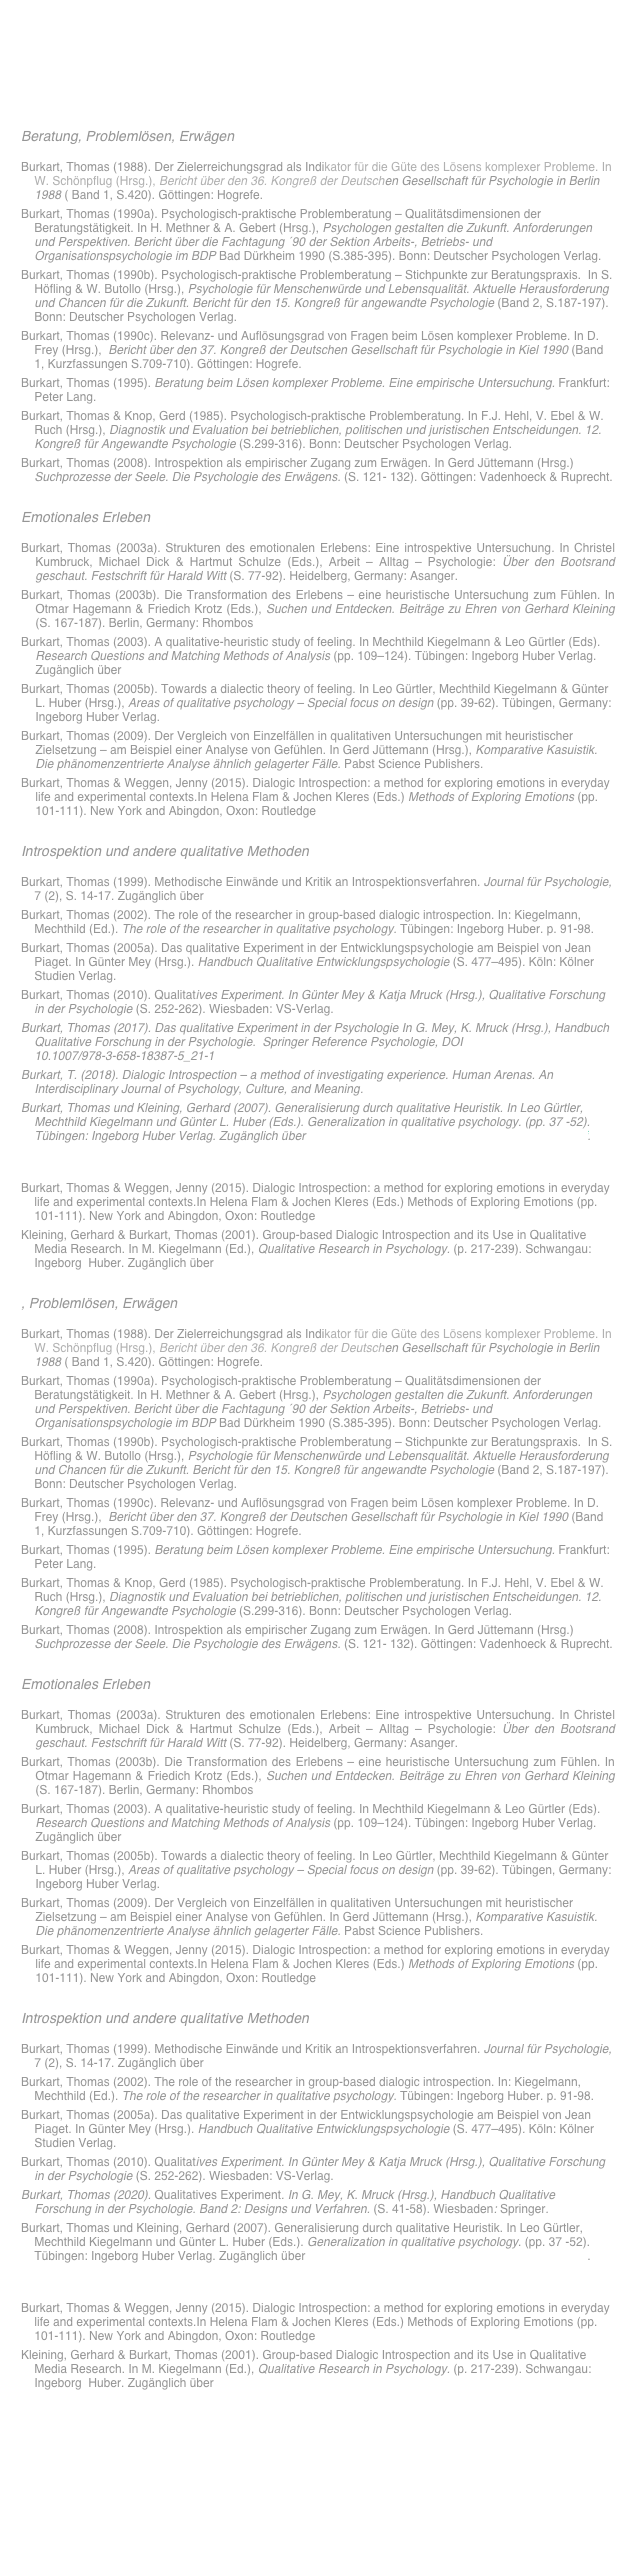 Beratung, Problemlösen, Erwägen
Burkart, Thomas (1988). Der Zielerreichungsgrad als Indikator für die Güte des Lösens komplexer Probleme. In  W. Schönpflug (Hrsg.), Bericht über den 36. Kongreß der Deutschen Gesellschaft für Psychologie in Berlin 1988 ( Band 1, S.420). Göttingen: Hogrefe.
Burkart, Thomas (1990a). Psychologisch-praktische Problemberatung – Qualitätsdimensionen der Beratungstätigkeit. In H. Methner & A. Gebert (Hrsg.), Psychologen gestalten die Zukunft. Anforderungen und Perspektiven. Bericht über die Fachtagung ´90 der Sektion Arbeits-, Betriebs- und Organisationspsychologie im BDP Bad Dürkheim 1990 (S.385-395). Bonn: Deutscher Psychologen Verlag.
Burkart, Thomas (1990b). Psychologisch-praktische Problemberatung – Stichpunkte zur Beratungspraxis.  In S. Höfling & W. Butollo (Hrsg.), Psychologie für Menschenwürde und Lebensqualität. Aktuelle Herausforderung und Chancen für die Zukunft. Bericht für den 15. Kongreß für angewandte Psychologie (Band 2, S.187-197). Bonn: Deutscher Psychologen Verlag. 
Burkart, Thomas (1990c). Relevanz- und Auflösungsgrad von Fragen beim Lösen komplexer Probleme. In D. Frey (Hrsg.),  Bericht über den 37. Kongreß der Deutschen Gesellschaft für Psychologie in Kiel 1990 (Band 1, Kurzfassungen S.709-710). Göttingen: Hogrefe.
Burkart, Thomas (1995). Beratung beim Lösen komplexer Probleme. Eine empirische Untersuchung. Frankfurt: Peter Lang.
Burkart, Thomas & Knop, Gerd (1985). Psychologisch-praktische Problemberatung. In F.J. Hehl, V. Ebel & W.  Ruch (Hrsg.), Diagnostik und Evaluation bei betrieblichen, politischen und juristischen Entscheidungen. 12. Kongreß für Angewandte Psychologie (S.299-316). Bonn: Deutscher Psychologen Verlag.
Burkart, Thomas (2008). Introspektion als empirischer Zugang zum Erwägen. In Gerd Jüttemann (Hrsg.) Suchprozesse der Seele. Die Psychologie des Erwägens. (S. 121- 132). Göttingen: Vadenhoeck & Ruprecht.

Emotionales Erleben
Burkart, Thomas (2003a). Strukturen des emotionalen Erlebens: Eine introspektive Untersuchung. In Christel Kumbruck, Michael Dick & Hartmut Schulze (Eds.), Arbeit – Alltag – Psychologie: Über den Bootsrand geschaut. Festschrift für Harald Witt (S. 77-92). Heidelberg, Germany: Asanger. 
Burkart, Thomas (2003b). Die Transformation des Erlebens – eine heuristische Untersuchung zum Fühlen. In Otmar Hagemann & Friedich Krotz (Eds.), Suchen und Entdecken. Beiträge zu Ehren von Gerhard Kleining (S. 167-187). Berlin, Germany: Rhombos
Burkart, Thomas (2003). A qualitative-heuristic study of feeling. In Mechthild Kiegelmann & Leo Gürtler (Eds). Research Questions and Matching Methods of Analysis (pp. 109–124). Tübingen: Ingeborg Huber Verlag. Zugänglich über http://www.introspektion.net/html/feelingburkart.html
Burkart, Thomas (2005b). Towards a dialectic theory of feeling. In Leo Gürtler, Mechthild Kiegelmann & Günter L. Huber (Hrsg.), Areas of qualitative psychology – Special focus on design (pp. 39-62). Tübingen, Germany: Ingeborg Huber Verlag.
Burkart, Thomas (2009). Der Vergleich von Einzelfällen in qualitativen Untersuchungen mit heuristischer Zielsetzung – am Beispiel einer Analyse von Gefühlen. In Gerd Jüttemann (Hrsg.), Komparative Kasuistik. Die phänomenzentrierte Analyse ähnlich gelagerter Fälle. Pabst Science Publishers.
Burkart, Thomas & Weggen, Jenny (2015). Dialogic Introspection: a method for exploring emotions in everyday life and experimental contexts.In Helena Flam & Jochen Kleres (Eds.) Methods of Exploring Emotions (pp. 101-111). New York and Abingdon, Oxon: Routledge

Introspektion und andere qualitative Methoden
Burkart, Thomas (1999). Methodische Einwände und Kritik an Introspektionsverfahren. Journal für Psychologie, 7 (2), S. 14-17. Zugänglich über http://www.introspektion.net/html/einwandeburkart.html
Burkart, Thomas (2002). The role of the researcher in group-based dialogic introspection. In: Kiegelmann, Mechthild (Ed.). The role of the researcher in qualitative psychology. Tübingen: Ingeborg Huber. p. 91-98.
Burkart, Thomas (2005a). Das qualitative Experiment in der Entwicklungspsychologie am Beispiel von Jean Piaget. In Günter Mey (Hrsg.). Handbuch Qualitative Entwicklungspsychologie (S. 477–495). Köln: Kölner Studien Verlag. 
Burkart, Thomas (2010). Qualitatives Experiment. In Günter Mey & Katja Mruck (Hrsg.), Qualitative Forschung in der Psychologie (S. 252-262). Wiesbaden: VS-Verlag.
Burkart, Thomas (2017). Das qualitative Experiment in der Psychologie In G. Mey, K. Mruck (Hrsg.), Handbuch Qualitative Forschung in der Psychologie.  Springer Reference Psychologie, DOI 10.1007/978-3-658-18387-5_21-1
Burkart, T. (2018). Dialogic Introspection – a method of investigating experience. Human Arenas. An Interdisciplinary Journal of Psychology, Culture, and Meaning. https://doi.org/10.1007/s42087-018-0027-5
Burkart, Thomas und Kleining, Gerhard (2007). Generalisierung durch qualitative Heuristik. In Leo Gürtler, Mechthild Kiegelmann und Günter L. Huber (Eds.). Generalization in qualitative psychology. (pp. 37 -52). Tübingen: Ingeborg Huber Verlag. Zugänglich über http://www.heureka-hamburg.de/Generalisierung.pdf.
Burkart, Thomas, Kleining, Gerhard & Witt, Harald (Hrsg.) (2010). Dialogische Introspektion: Ein gruppengestütztes Verfahren zur Erforschung des Erlebens. Wiesbaden: VS Verlag.
Burkart, Thomas & Weggen, Jenny (2015). Dialogic Introspection: a method for exploring emotions in everyday life and experimental contexts.In Helena Flam & Jochen Kleres (Eds.) Methods of Exploring Emotions (pp. 101-111). New York and Abingdon, Oxon: Routledge
Kleining, Gerhard & Burkart, Thomas (2001). Group-based Dialogic Introspection and its Use in Qualitative Media Research. In M. Kiegelmann (Ed.), Qualitative Research in Psychology. (p. 217-239). Schwangau: Ingeborg  Huber. Zugänglich über http://www.introspektion.net/html/mediaburkart.html

, Problemlösen, Erwägen
Burkart, Thomas (1988). Der Zielerreichungsgrad als Indikator für die Güte des Lösens komplexer Probleme. In  W. Schönpflug (Hrsg.), Bericht über den 36. Kongreß der Deutschen Gesellschaft für Psychologie in Berlin 1988 ( Band 1, S.420). Göttingen: Hogrefe.
Burkart, Thomas (1990a). Psychologisch-praktische Problemberatung – Qualitätsdimensionen der Beratungstätigkeit. In H. Methner & A. Gebert (Hrsg.), Psychologen gestalten die Zukunft. Anforderungen und Perspektiven. Bericht über die Fachtagung ´90 der Sektion Arbeits-, Betriebs- und Organisationspsychologie im BDP Bad Dürkheim 1990 (S.385-395). Bonn: Deutscher Psychologen Verlag.
Burkart, Thomas (1990b). Psychologisch-praktische Problemberatung – Stichpunkte zur Beratungspraxis.  In S. Höfling & W. Butollo (Hrsg.), Psychologie für Menschenwürde und Lebensqualität. Aktuelle Herausforderung und Chancen für die Zukunft. Bericht für den 15. Kongreß für angewandte Psychologie (Band 2, S.187-197). Bonn: Deutscher Psychologen Verlag. 
Burkart, Thomas (1990c). Relevanz- und Auflösungsgrad von Fragen beim Lösen komplexer Probleme. In D. Frey (Hrsg.),  Bericht über den 37. Kongreß der Deutschen Gesellschaft für Psychologie in Kiel 1990 (Band 1, Kurzfassungen S.709-710). Göttingen: Hogrefe.
Burkart, Thomas (1995). Beratung beim Lösen komplexer Probleme. Eine empirische Untersuchung. Frankfurt: Peter Lang.
Burkart, Thomas & Knop, Gerd (1985). Psychologisch-praktische Problemberatung. In F.J. Hehl, V. Ebel & W.  Ruch (Hrsg.), Diagnostik und Evaluation bei betrieblichen, politischen und juristischen Entscheidungen. 12. Kongreß für Angewandte Psychologie (S.299-316). Bonn: Deutscher Psychologen Verlag.
Burkart, Thomas (2008). Introspektion als empirischer Zugang zum Erwägen. In Gerd Jüttemann (Hrsg.) Suchprozesse der Seele. Die Psychologie des Erwägens. (S. 121- 132). Göttingen: Vadenhoeck & Ruprecht.

Emotionales Erleben
Burkart, Thomas (2003a). Strukturen des emotionalen Erlebens: Eine introspektive Untersuchung. In Christel Kumbruck, Michael Dick & Hartmut Schulze (Eds.), Arbeit – Alltag – Psychologie: Über den Bootsrand geschaut. Festschrift für Harald Witt (S. 77-92). Heidelberg, Germany: Asanger. 
Burkart, Thomas (2003b). Die Transformation des Erlebens – eine heuristische Untersuchung zum Fühlen. In Otmar Hagemann & Friedich Krotz (Eds.), Suchen und Entdecken. Beiträge zu Ehren von Gerhard Kleining (S. 167-187). Berlin, Germany: Rhombos
Burkart, Thomas (2003). A qualitative-heuristic study of feeling. In Mechthild Kiegelmann & Leo Gürtler (Eds). Research Questions and Matching Methods of Analysis (pp. 109–124). Tübingen: Ingeborg Huber Verlag. Zugänglich über http://www.introspektion.net/html/feelingburkart.html
Burkart, Thomas (2005b). Towards a dialectic theory of feeling. In Leo Gürtler, Mechthild Kiegelmann & Günter L. Huber (Hrsg.), Areas of qualitative psychology – Special focus on design (pp. 39-62). Tübingen, Germany: Ingeborg Huber Verlag.
Burkart, Thomas (2009). Der Vergleich von Einzelfällen in qualitativen Untersuchungen mit heuristischer Zielsetzung – am Beispiel einer Analyse von Gefühlen. In Gerd Jüttemann (Hrsg.), Komparative Kasuistik. Die phänomenzentrierte Analyse ähnlich gelagerter Fälle. Pabst Science Publishers.
Burkart, Thomas & Weggen, Jenny (2015). Dialogic Introspection: a method for exploring emotions in everyday life and experimental contexts.In Helena Flam & Jochen Kleres (Eds.) Methods of Exploring Emotions (pp. 101-111). New York and Abingdon, Oxon: Routledge

Introspektion und andere qualitative Methoden
Burkart, Thomas (1999). Methodische Einwände und Kritik an Introspektionsverfahren. Journal für Psychologie, 7 (2), S. 14-17. Zugänglich über http://www.introspektion.net/html/einwandeburkart.html
Burkart, Thomas (2002). The role of the researcher in group-based dialogic introspection. In: Kiegelmann, Mechthild (Ed.). The role of the researcher in qualitative psychology. Tübingen: Ingeborg Huber. p. 91-98.
Burkart, Thomas (2005a). Das qualitative Experiment in der Entwicklungspsychologie am Beispiel von Jean Piaget. In Günter Mey (Hrsg.). Handbuch Qualitative Entwicklungspsychologie (S. 477–495). Köln: Kölner Studien Verlag. 
Burkart, Thomas (2010). Qualitatives Experiment. In Günter Mey & Katja Mruck (Hrsg.), Qualitative Forschung in der Psychologie (S. 252-262). Wiesbaden: VS-Verlag.
Burkart, Thomas (2020). Qualitatives Experiment. In G. Mey, K. Mruck (Hrsg.), Handbuch Qualitative Forschung in der Psychologie. Band 2: Designs und Verfahren. (S. 41-58). Wiesbaden: Springer.
Burkart, Thomas und Kleining, Gerhard (2007). Generalisierung durch qualitative Heuristik. In Leo Gürtler, Mechthild Kiegelmann und Günter L. Huber (Eds.). Generalization in qualitative psychology. (pp. 37 -52). Tübingen: Ingeborg Huber Verlag. Zugänglich über http://www.heureka-hamburg.de/Generalisierung.pdf.
Burkart, Thomas, Kleining, Gerhard & Witt, Harald (Hrsg.) (2010). Dialogische Introspektion: Ein gruppengestütztes Verfahren zur Erforschung des Erlebens. Wiesbaden: VS Verlag.
Burkart, Thomas & Weggen, Jenny (2015). Dialogic Introspection: a method for exploring emotions in everyday life and experimental contexts.In Helena Flam & Jochen Kleres (Eds.) Methods of Exploring Emotions (pp. 101-111). New York and Abingdon, Oxon: Routledge
Kleining, Gerhard & Burkart, Thomas (2001). Group-based Dialogic Introspection and its Use in Qualitative Media Research. In M. Kiegelmann (Ed.), Qualitative Research in Psychology. (p. 217-239). Schwangau: Ingeborg  Huber. Zugänglich über http://www.introspektion.net/html/mediaburkart.html

